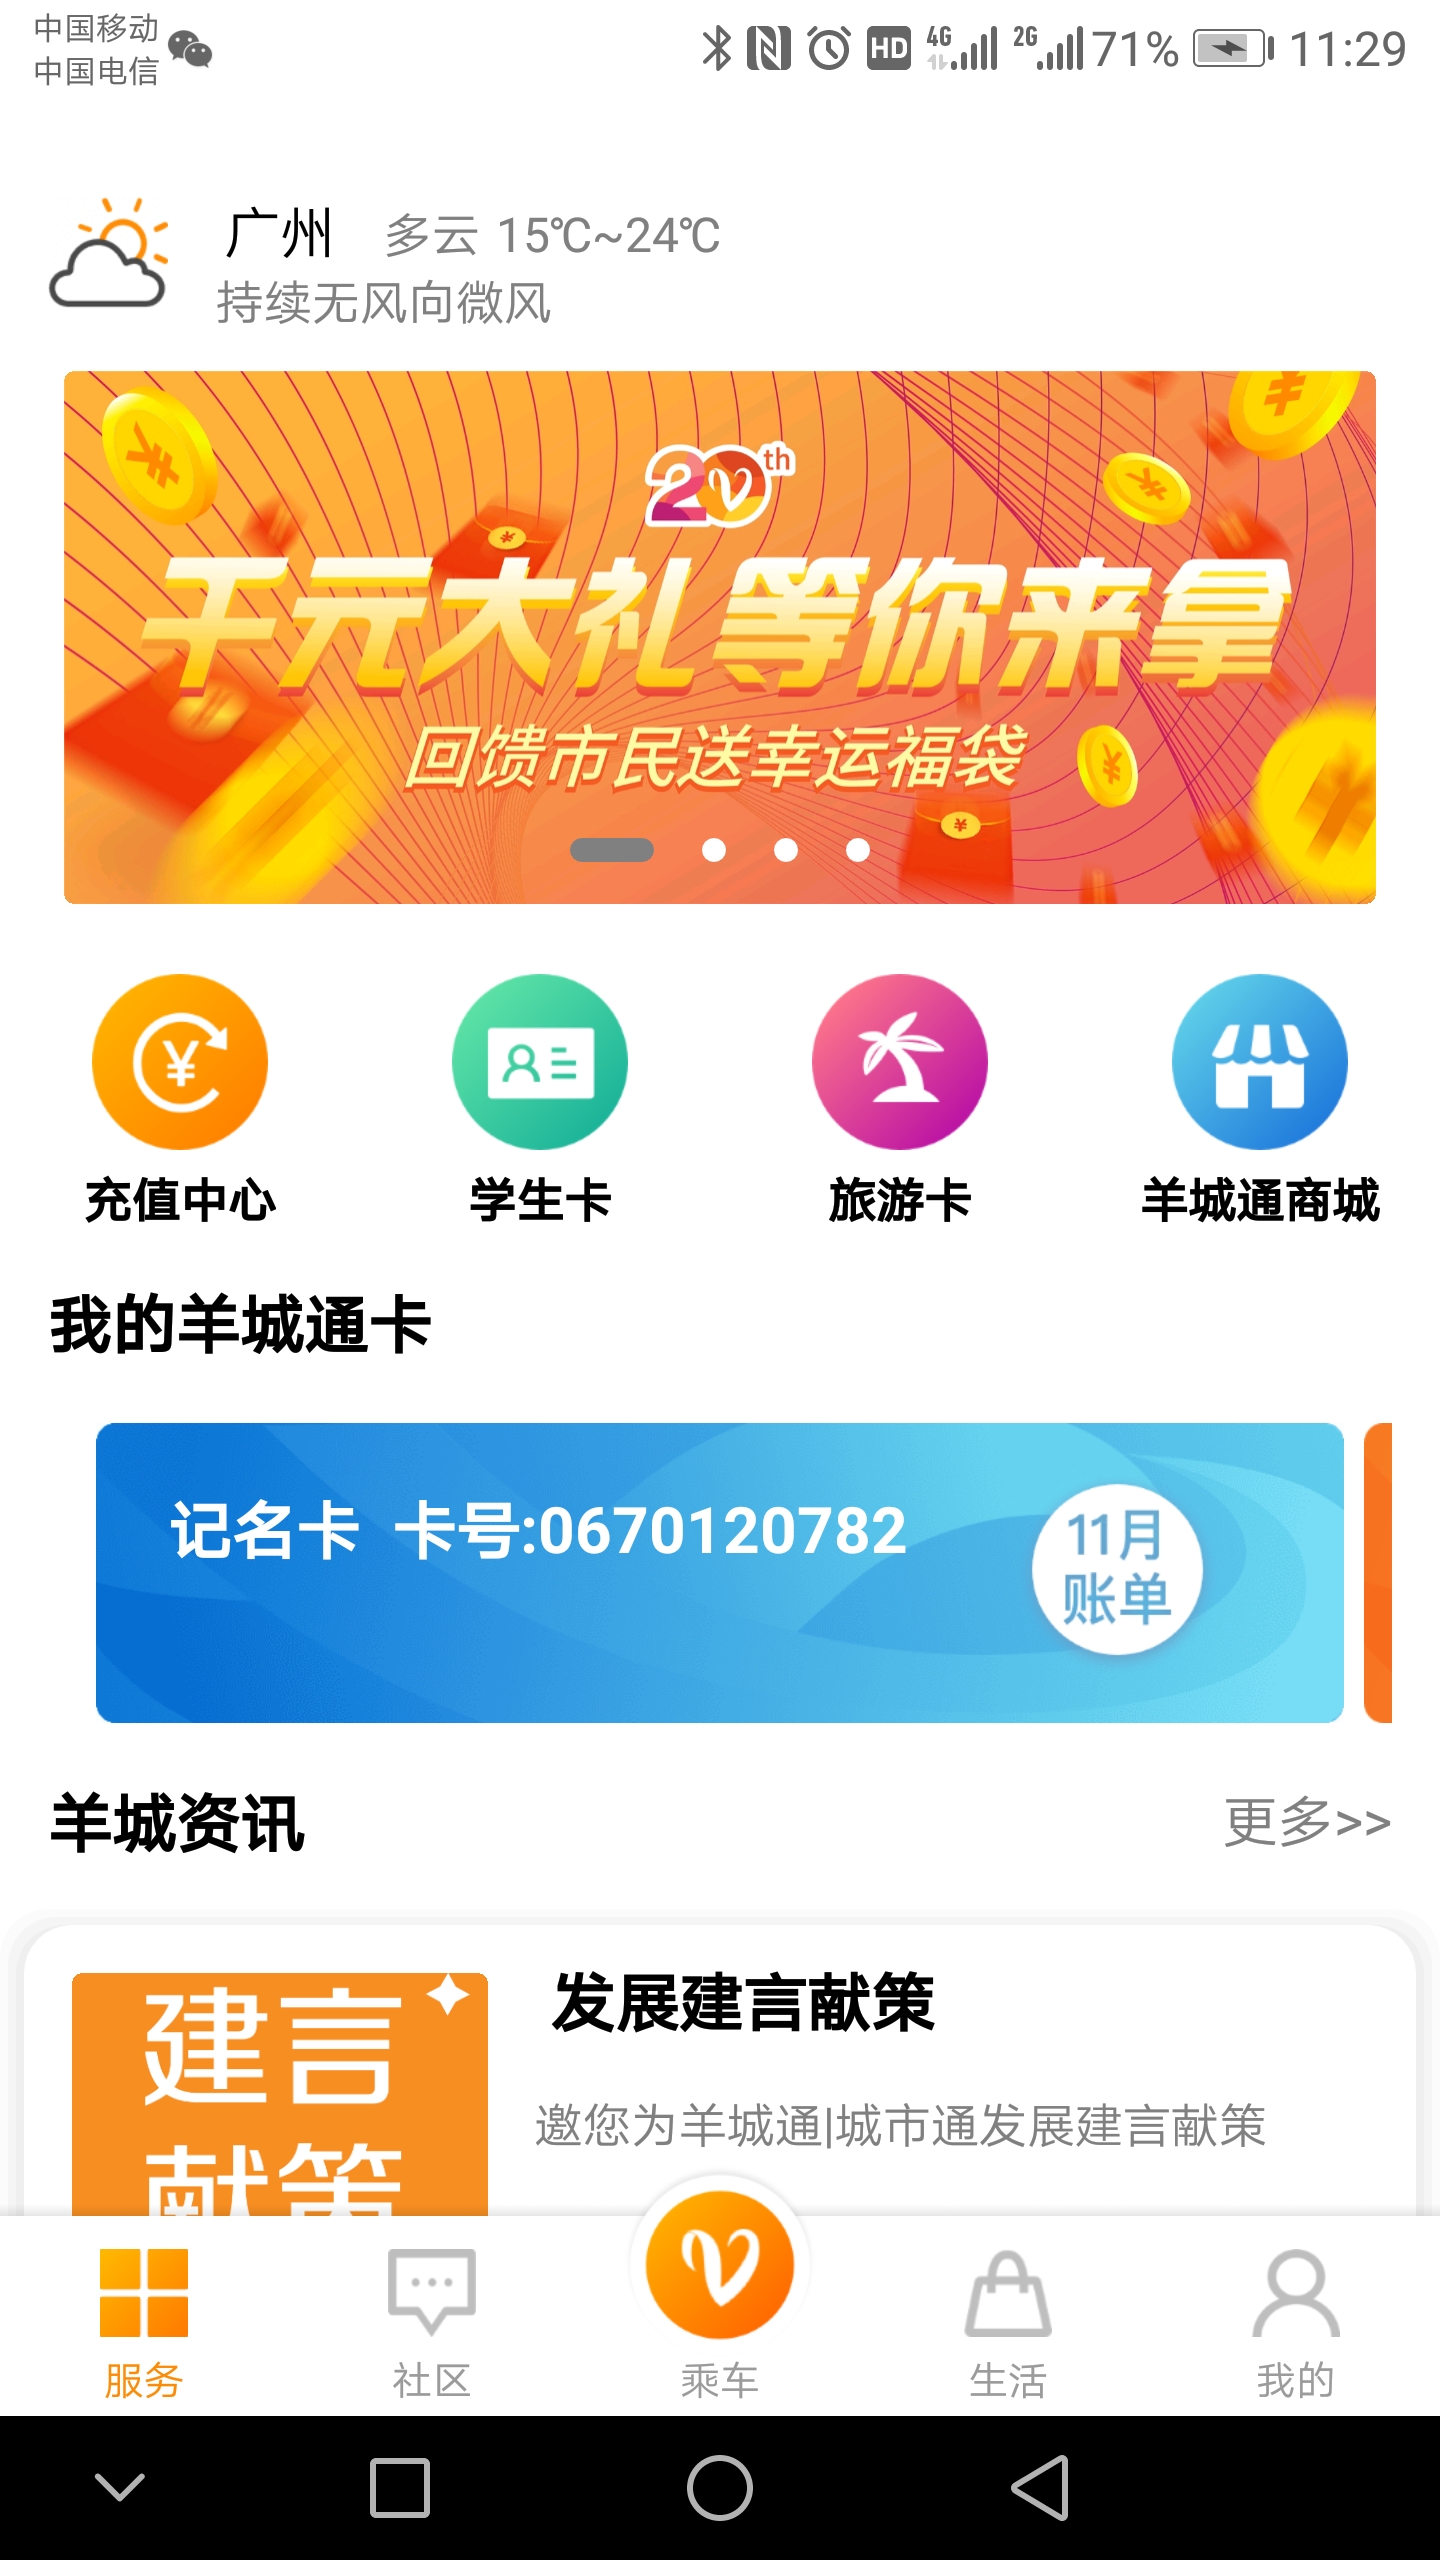 广州羊城通服务中心v8.3 官方版